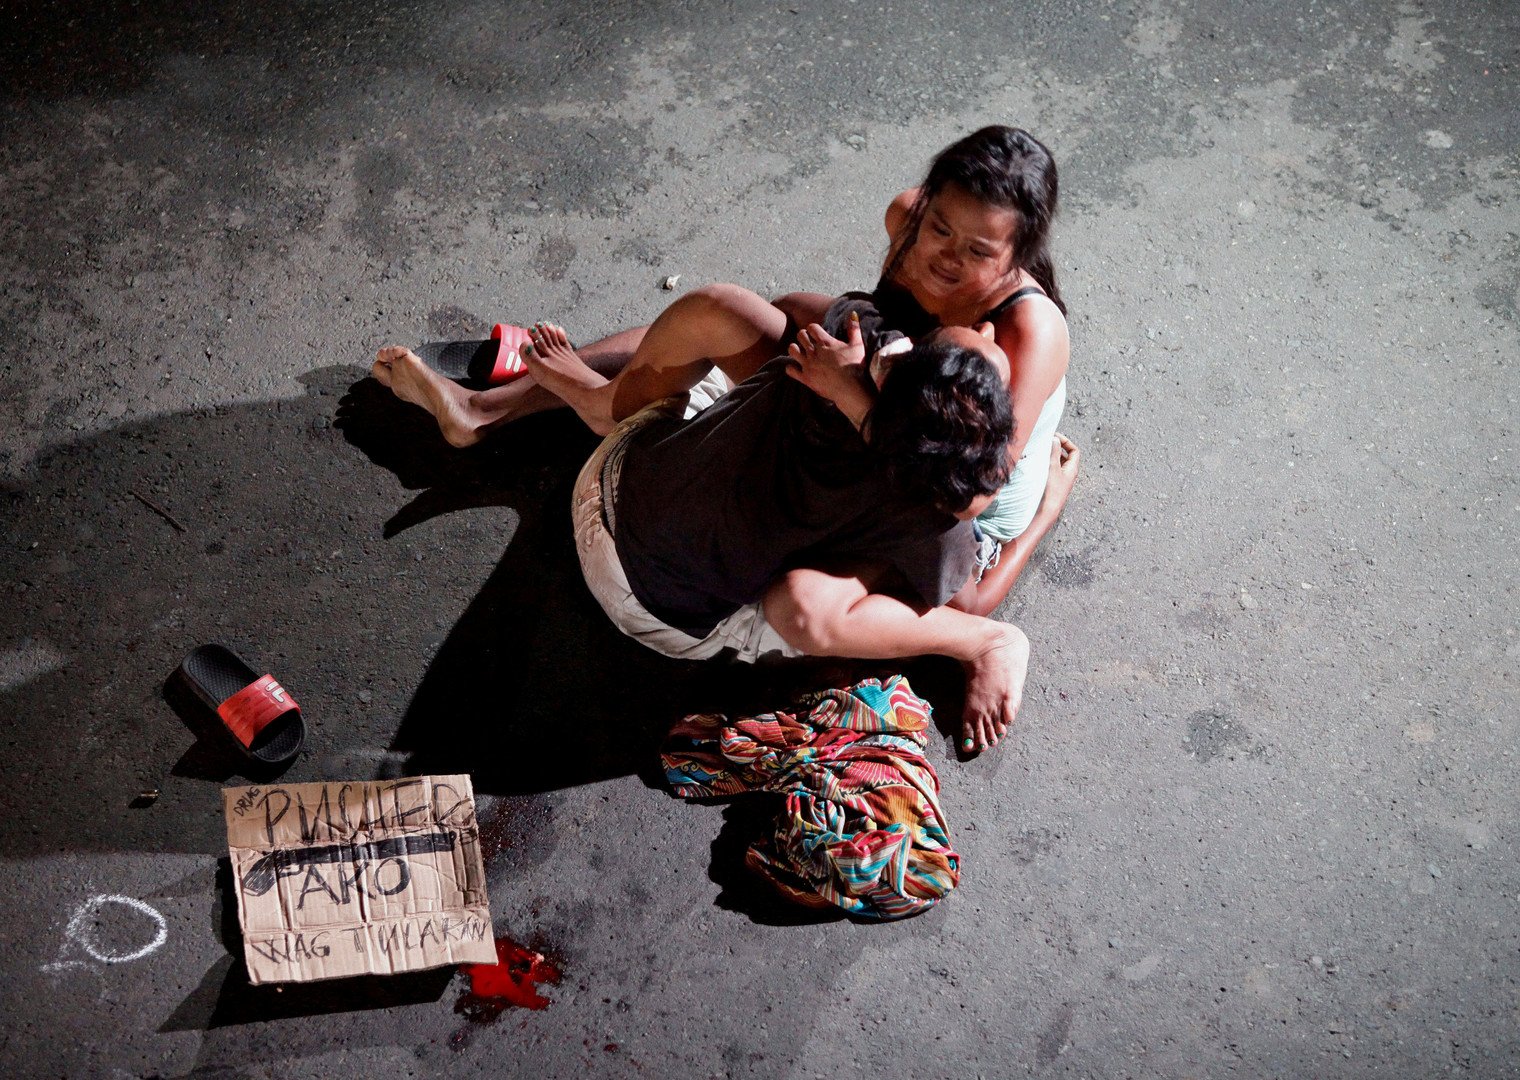 هكذا تتعامل سلطات الفلبين مع تجار المخدرات..